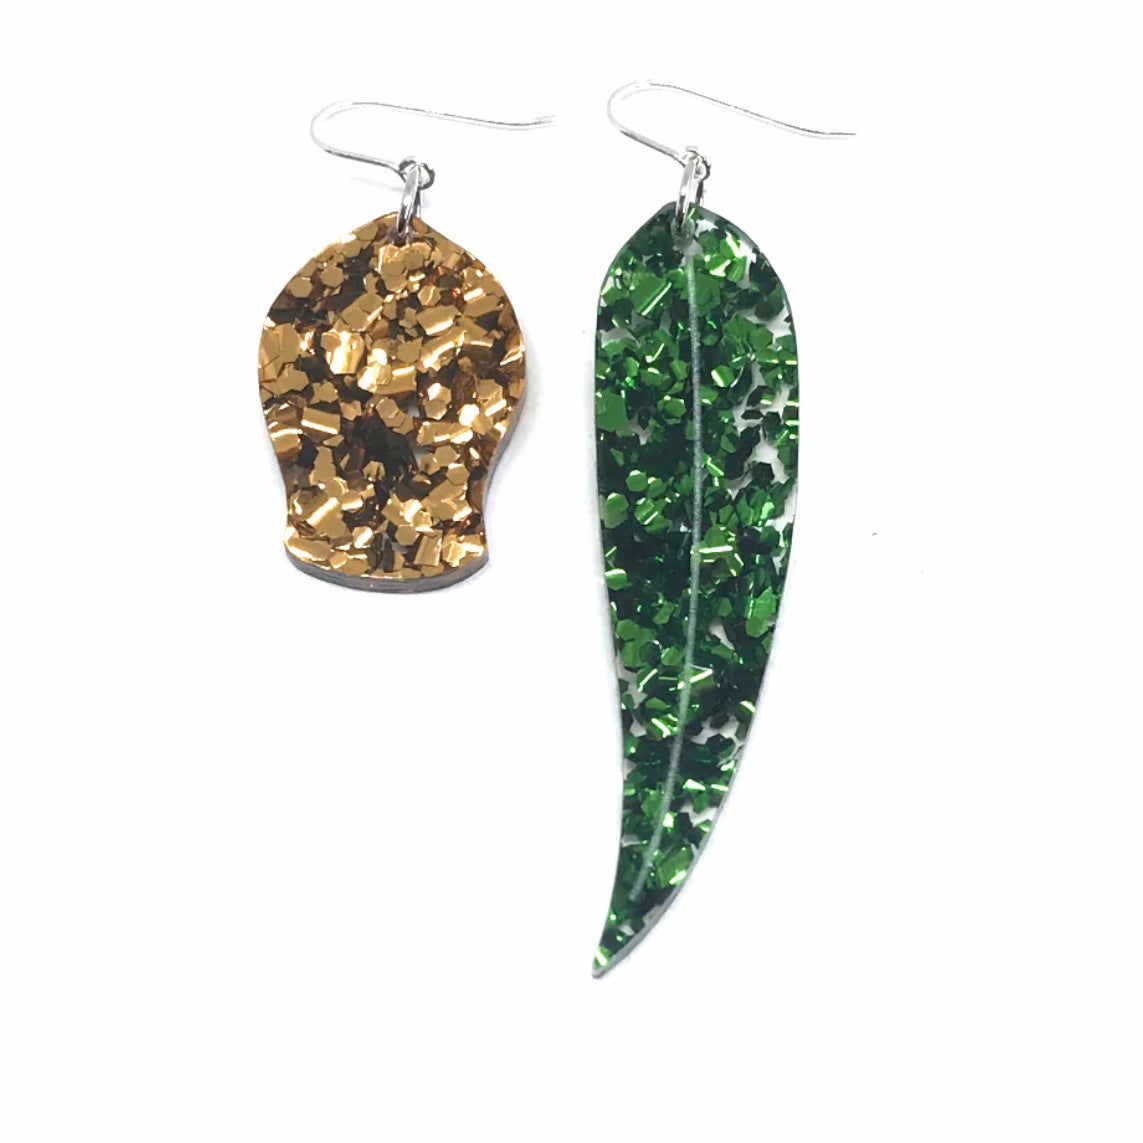 Gumnut and Leaf Odd Earrings